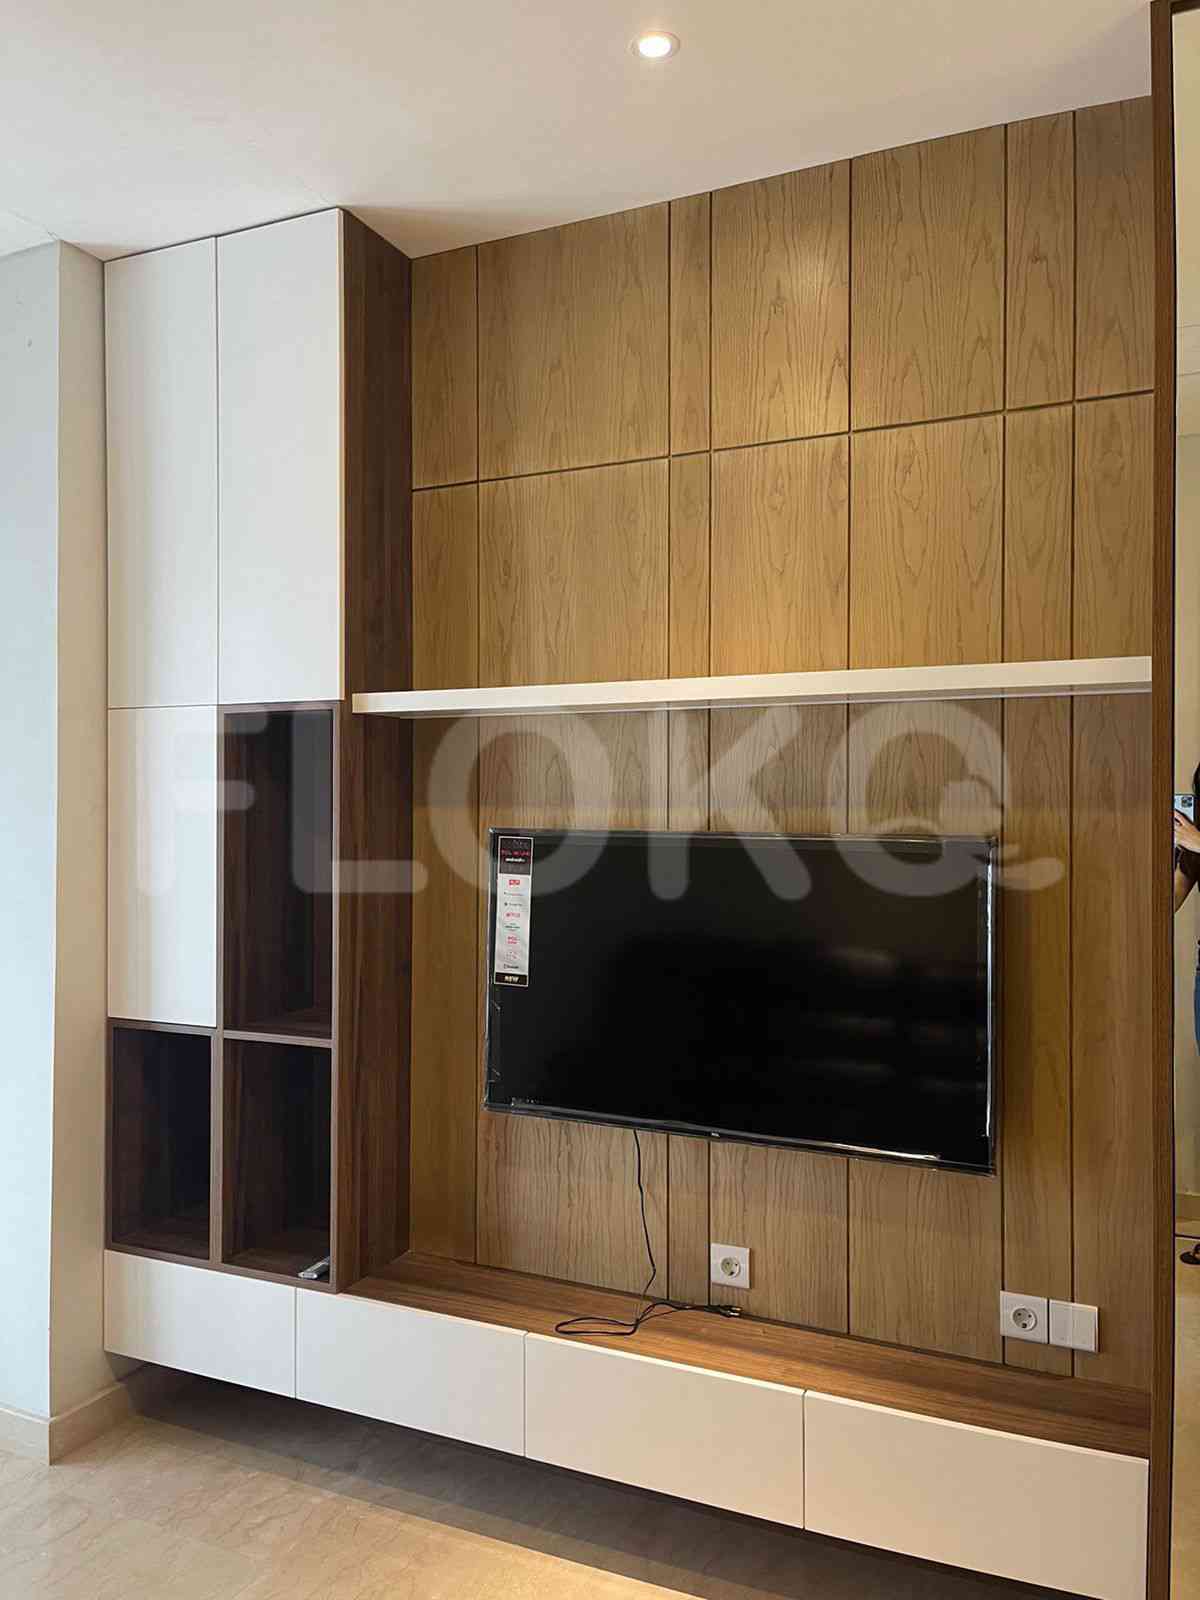 3 Bedroom on 10th Floor for Rent in Sudirman Suites Jakarta - fsuaf7 14